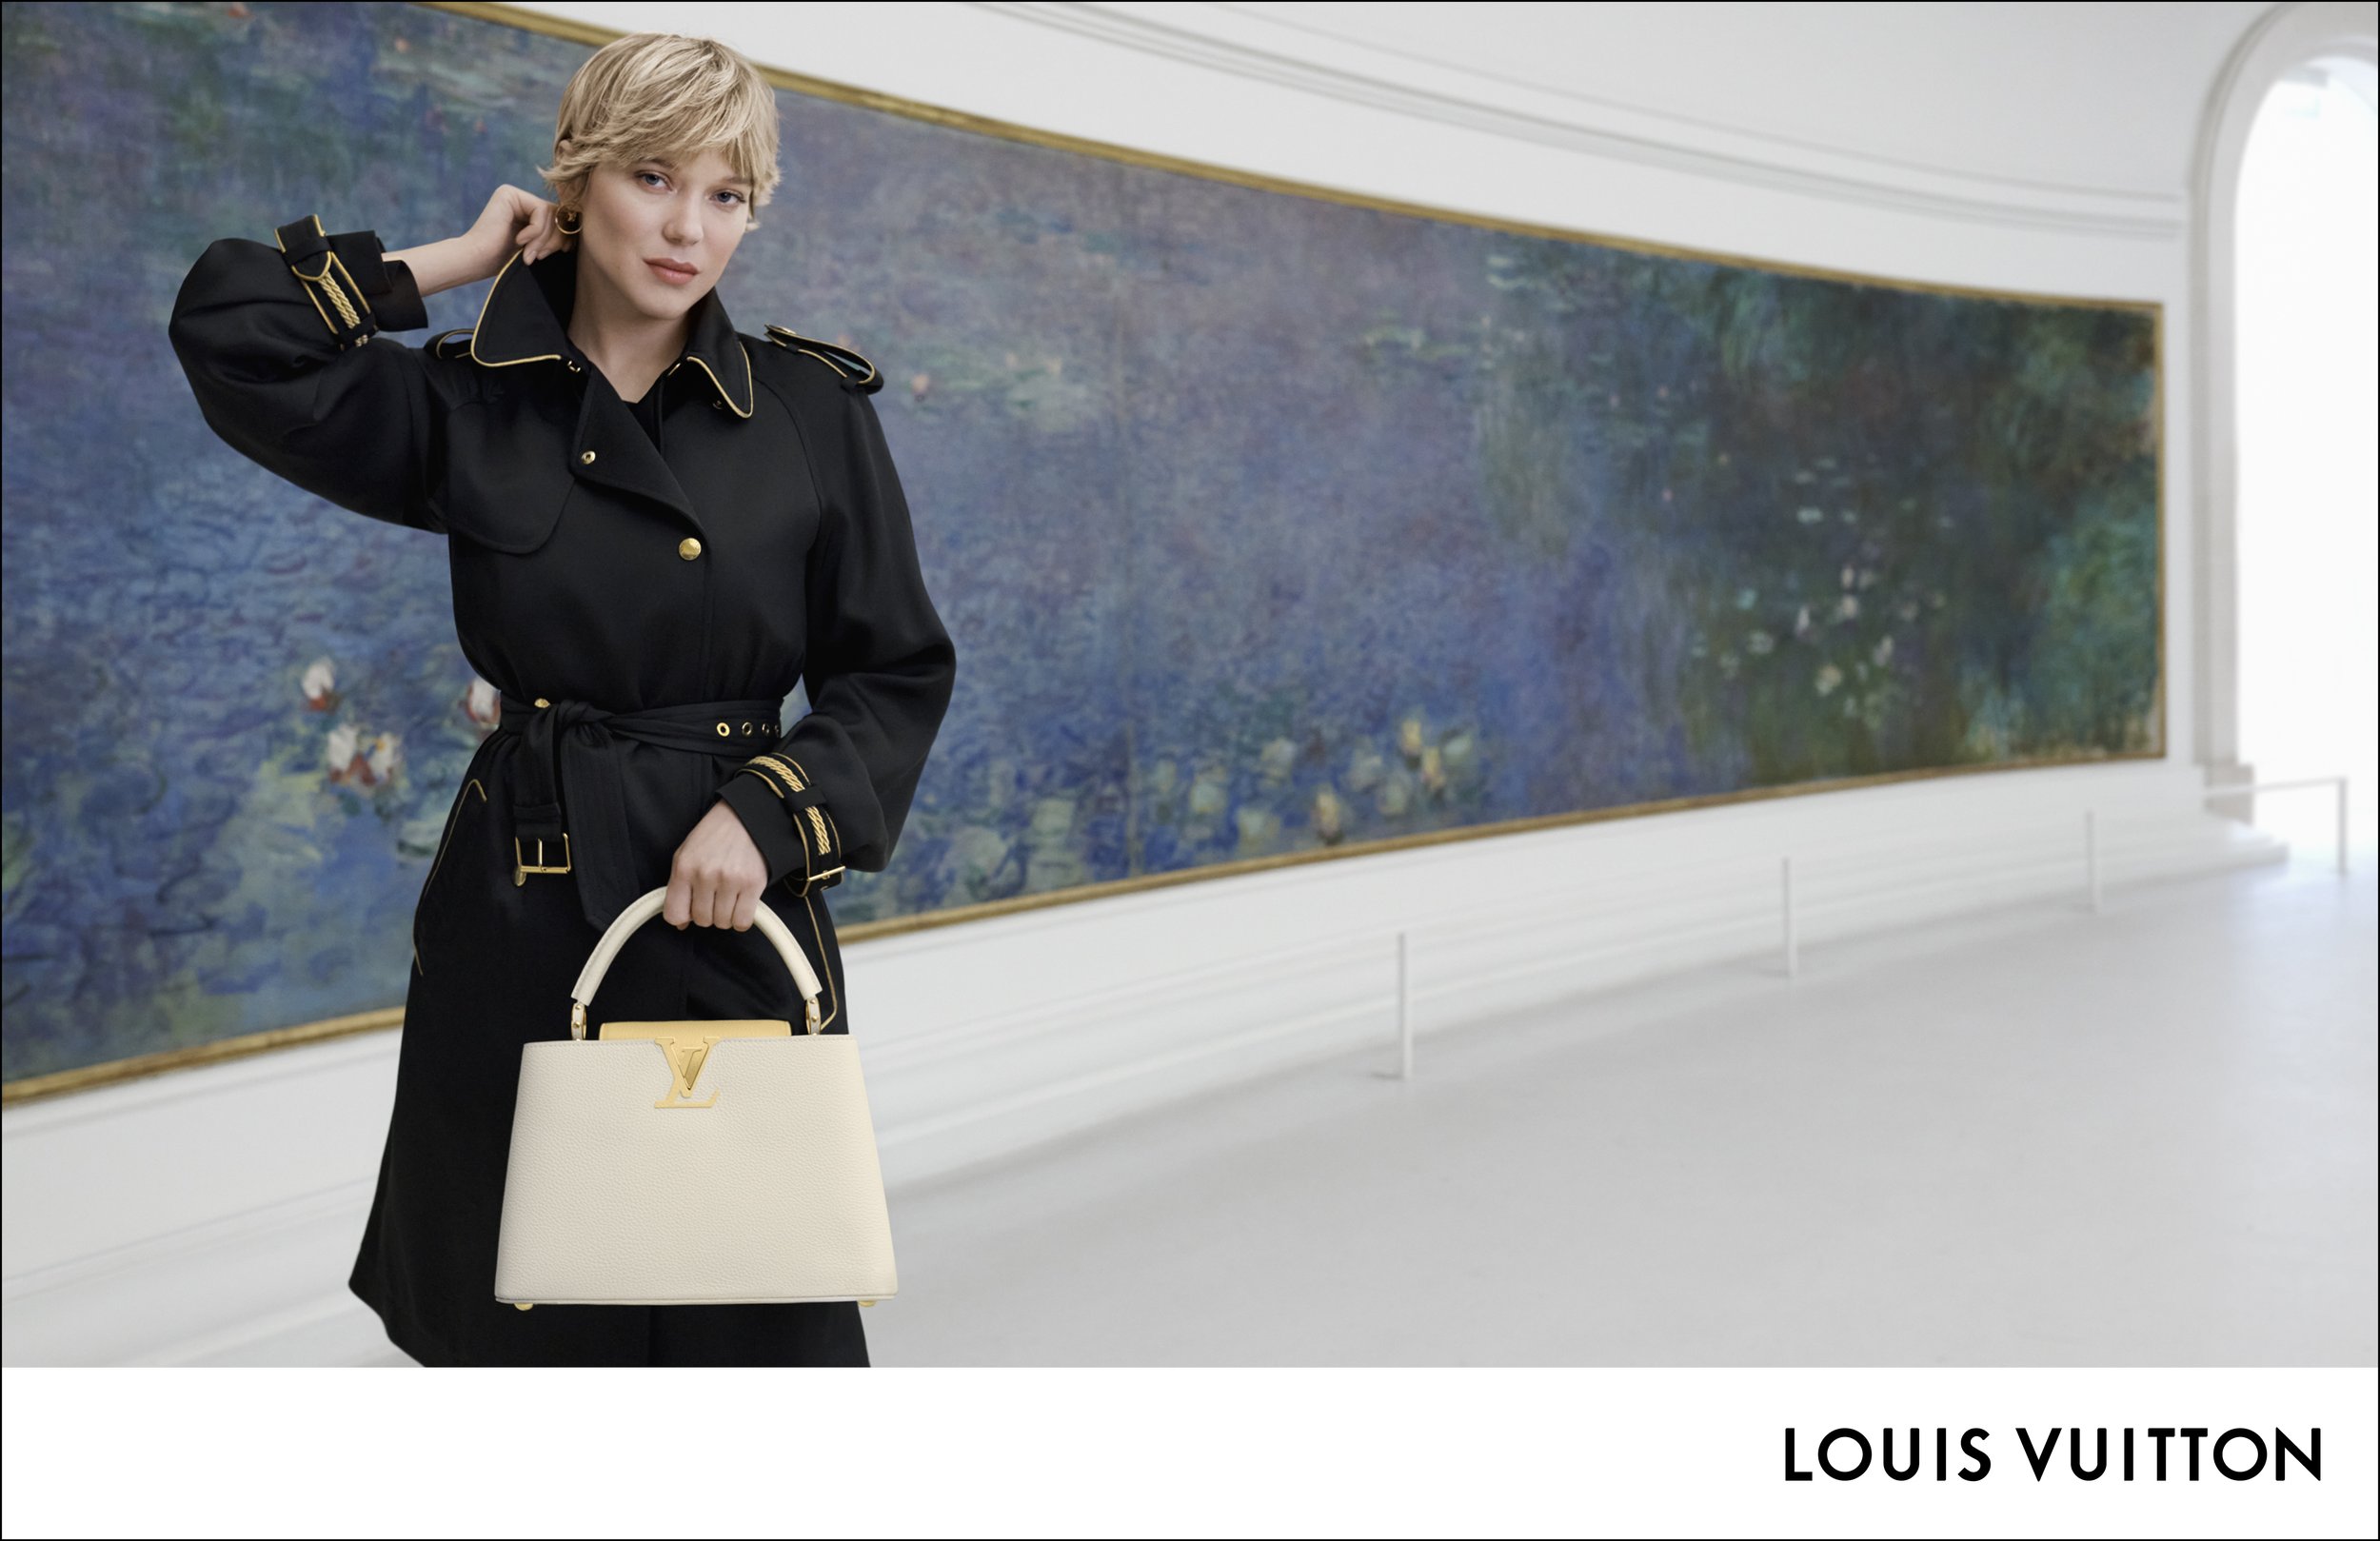 Louis Vuitton — JASON DUZANSKY